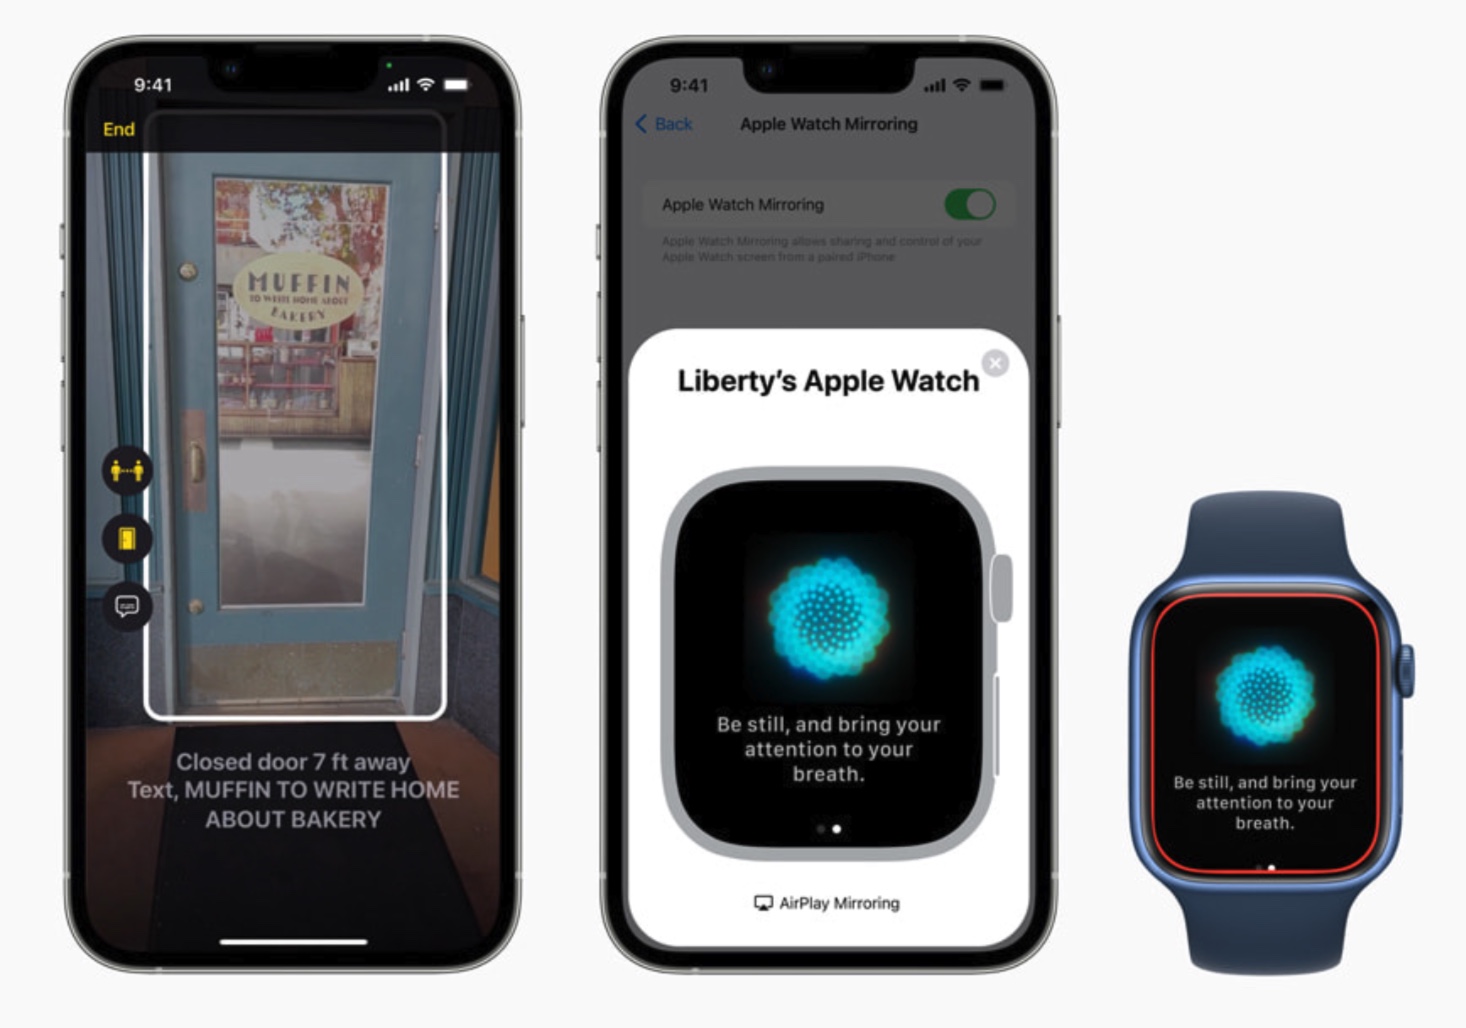 Apple porterà le Live Captions su iPhone, iPad e Mac